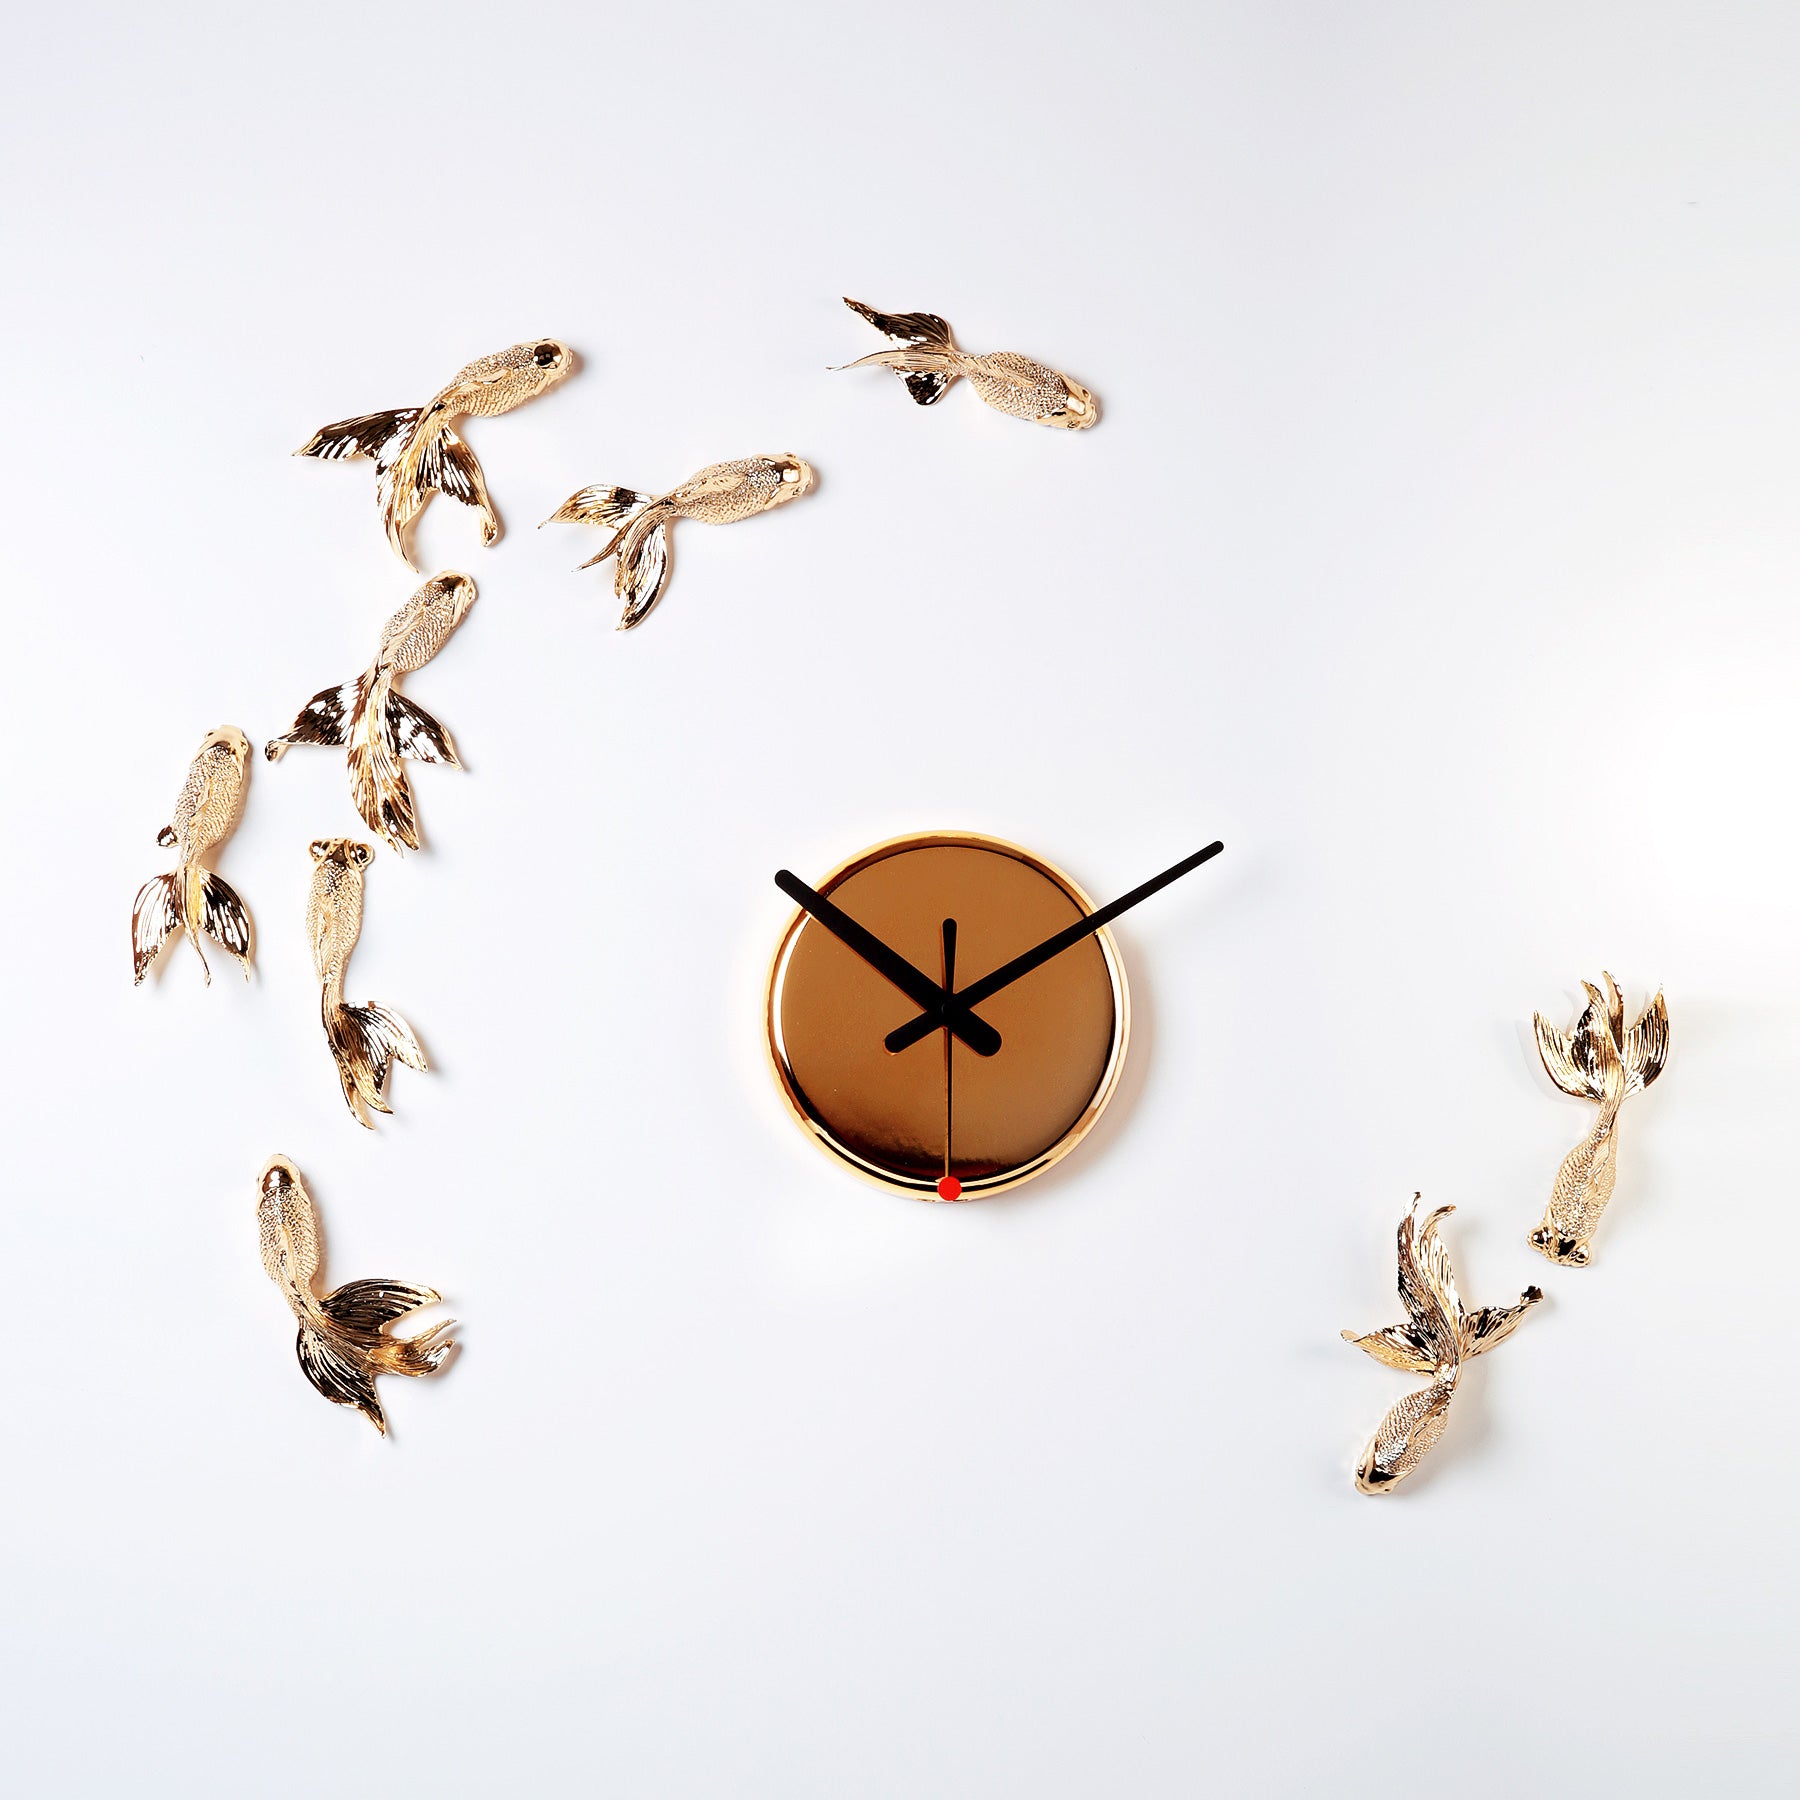 Fish Wall Clock